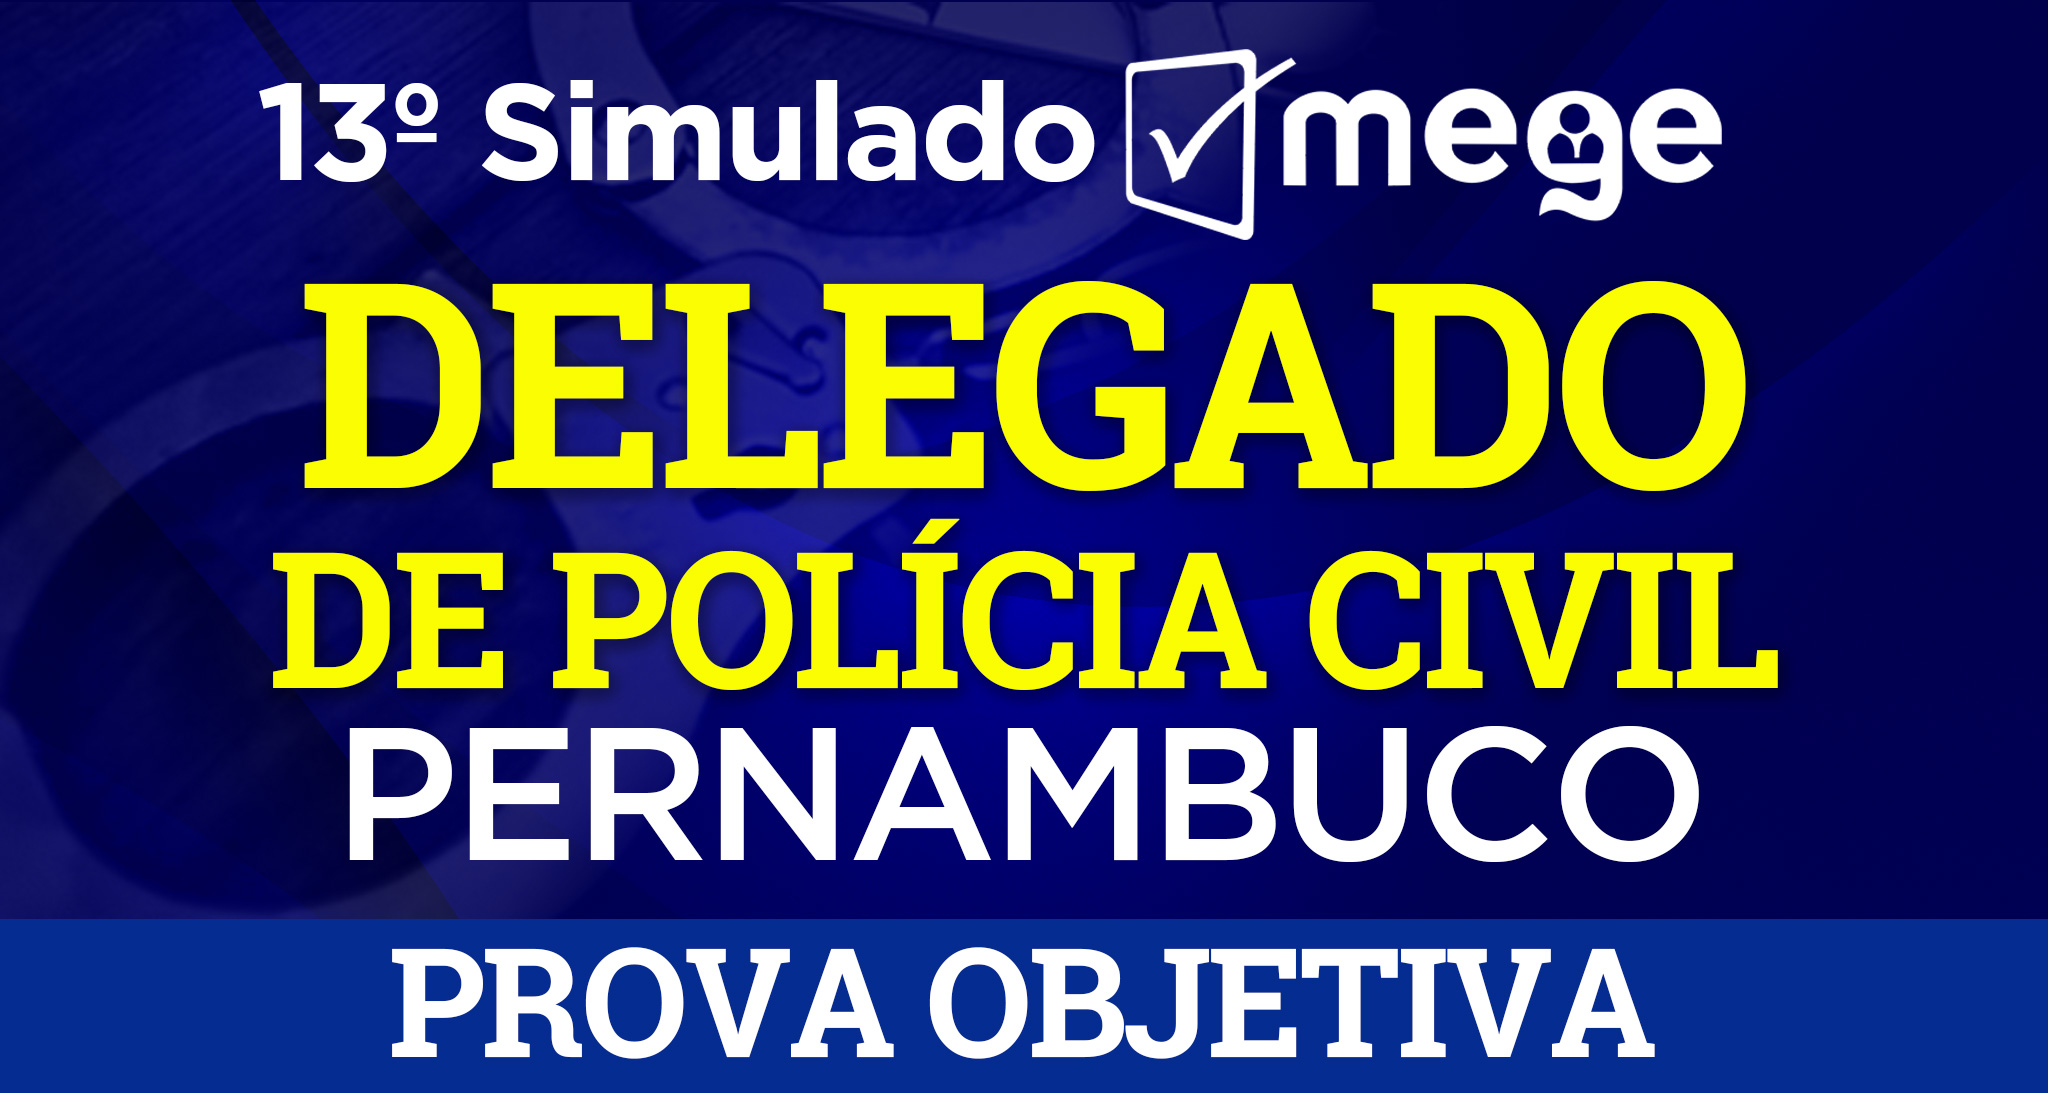 13° Simulado Mege (1° fase - Delegado de Polícia Civil - PE)